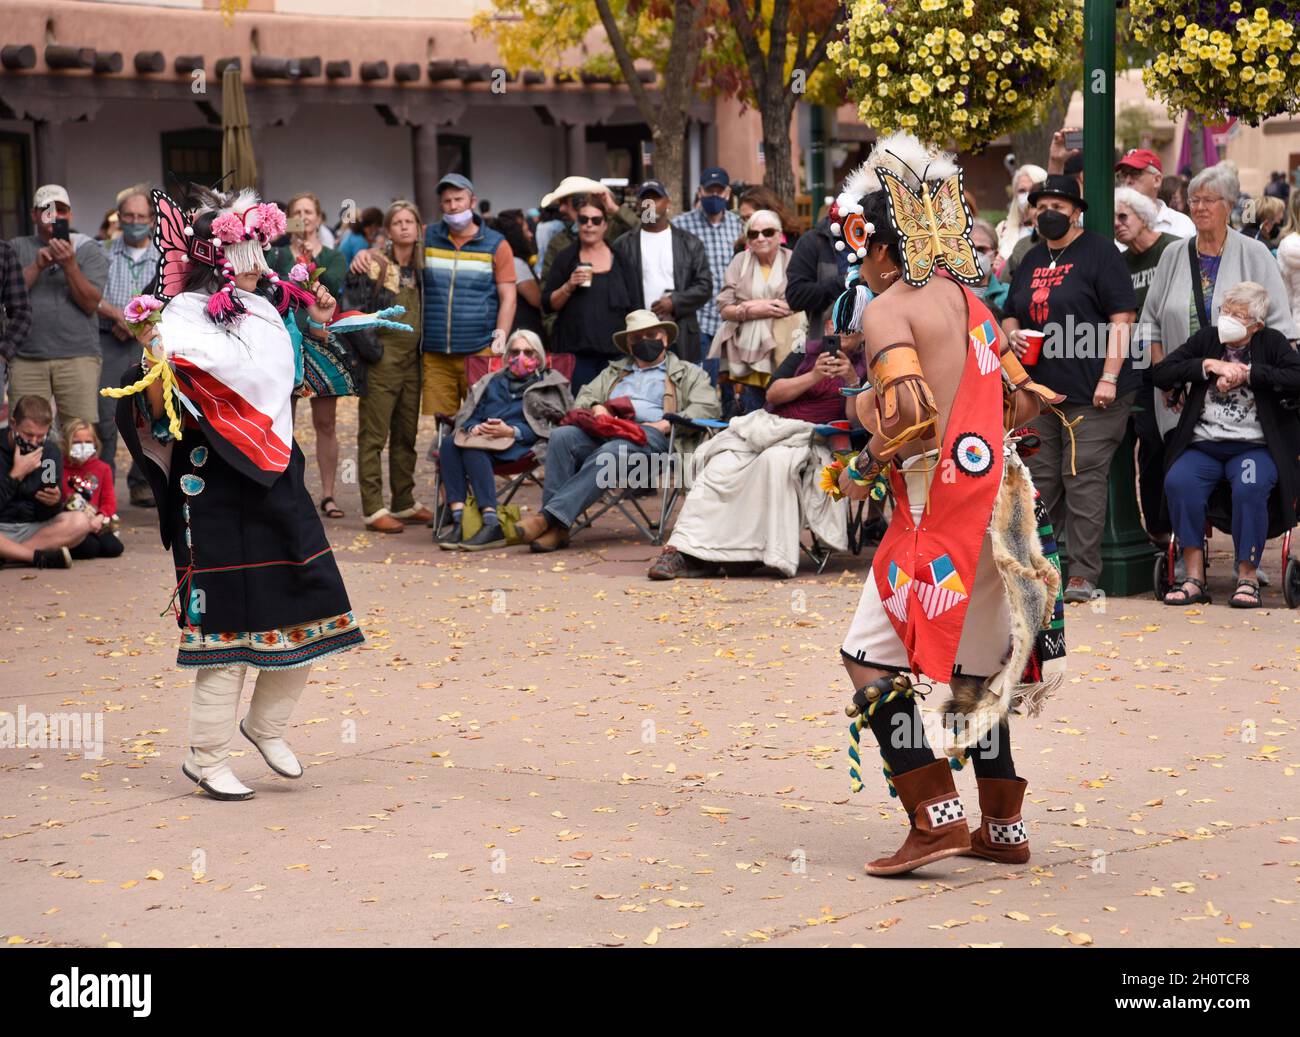 Bailarines nativos americanos del Pueblo Zuni en Nuevo México actúan en un evento del Día de los Pueblos Indígenas en Santa Fe, Nuevo México. Foto de stock